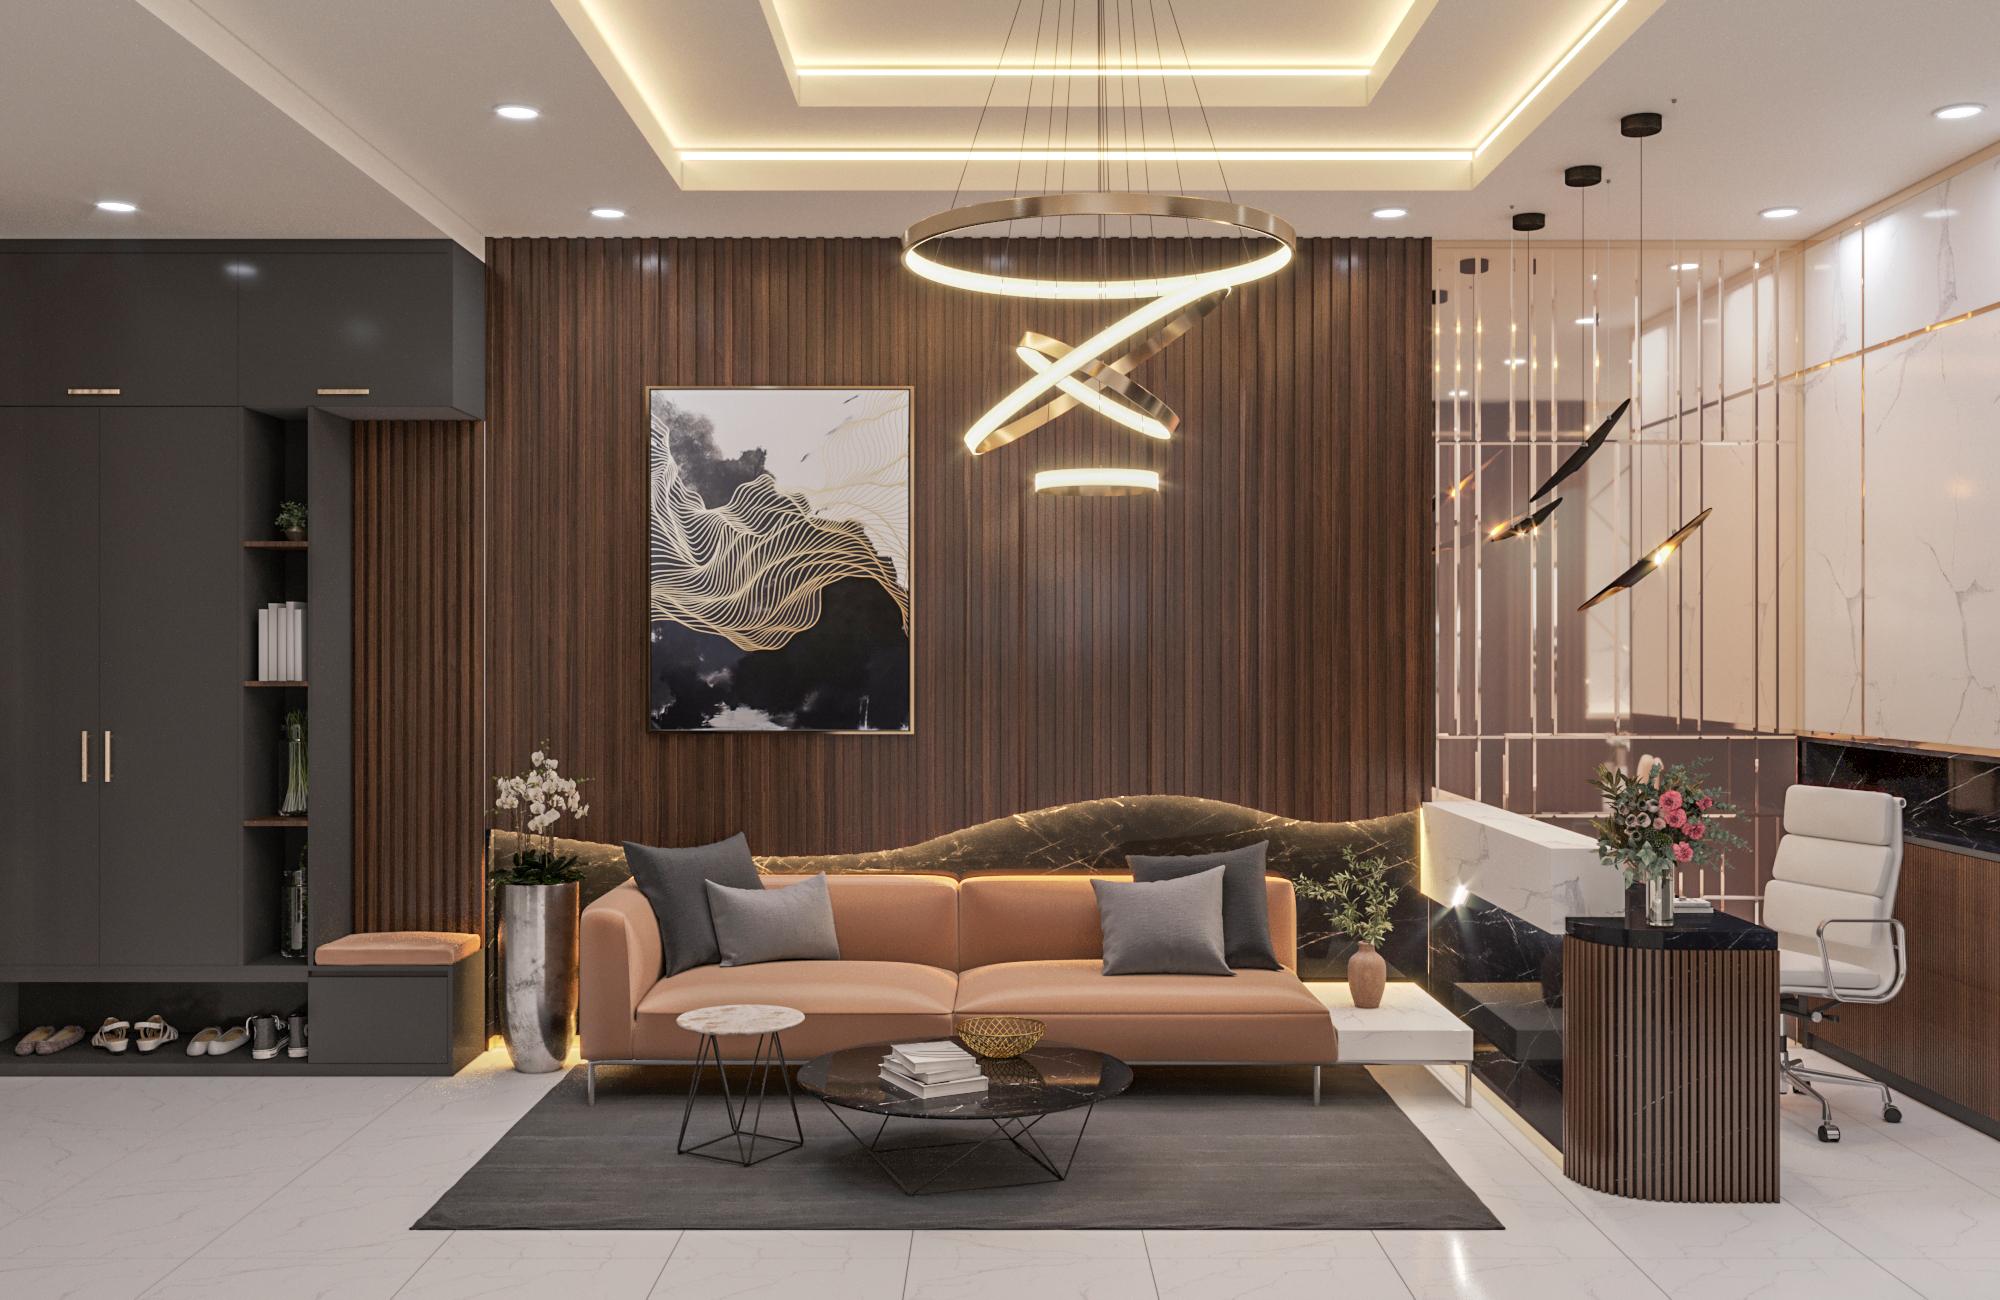 Phong cách thiết kế nội thất hiện đại sang trọng, tối giản - Mayainterior.vn